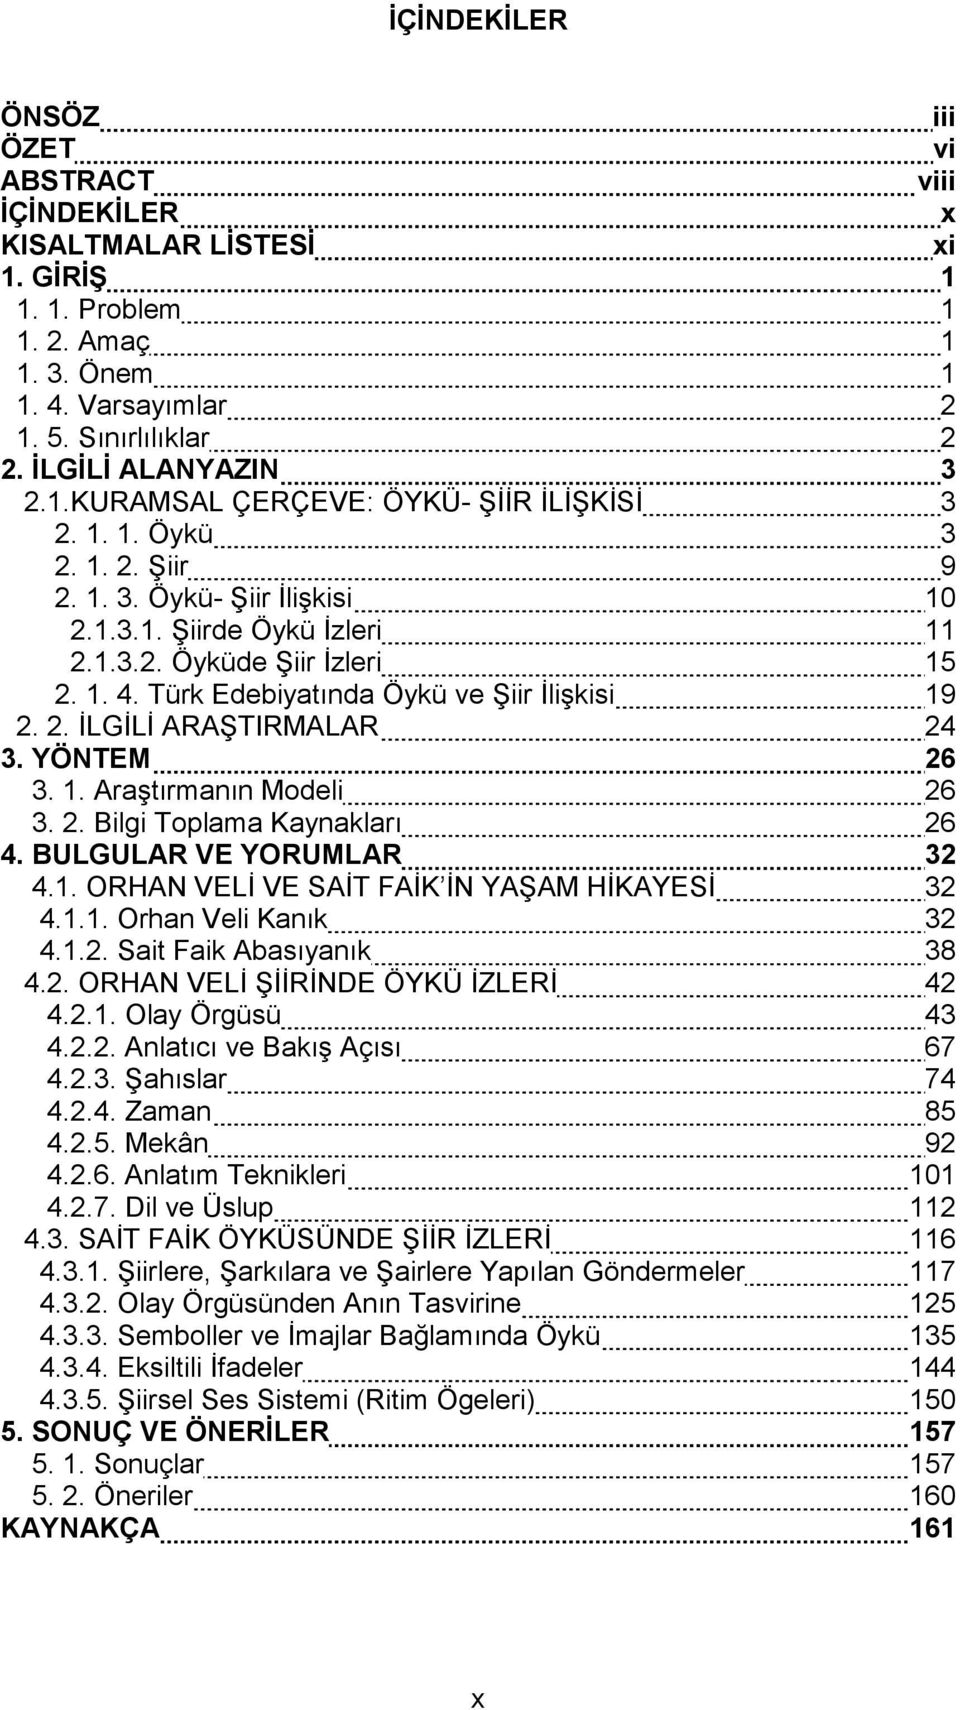 Türk Edebiyatında Öykü ve Şiir İlişkisi 19 2. 2. İLGİLİ ARAŞTIRMALAR 24 3. YÖNTEM 26 3. 1. Araştırmanın Modeli 26 3. 2. Bilgi Toplama Kaynakları 26 4. BULGULAR VE YORUMLAR 32 4.1. ORHAN VELİ VE SAİT FAİK İN YAŞAM HİKAYESİ 32 4.